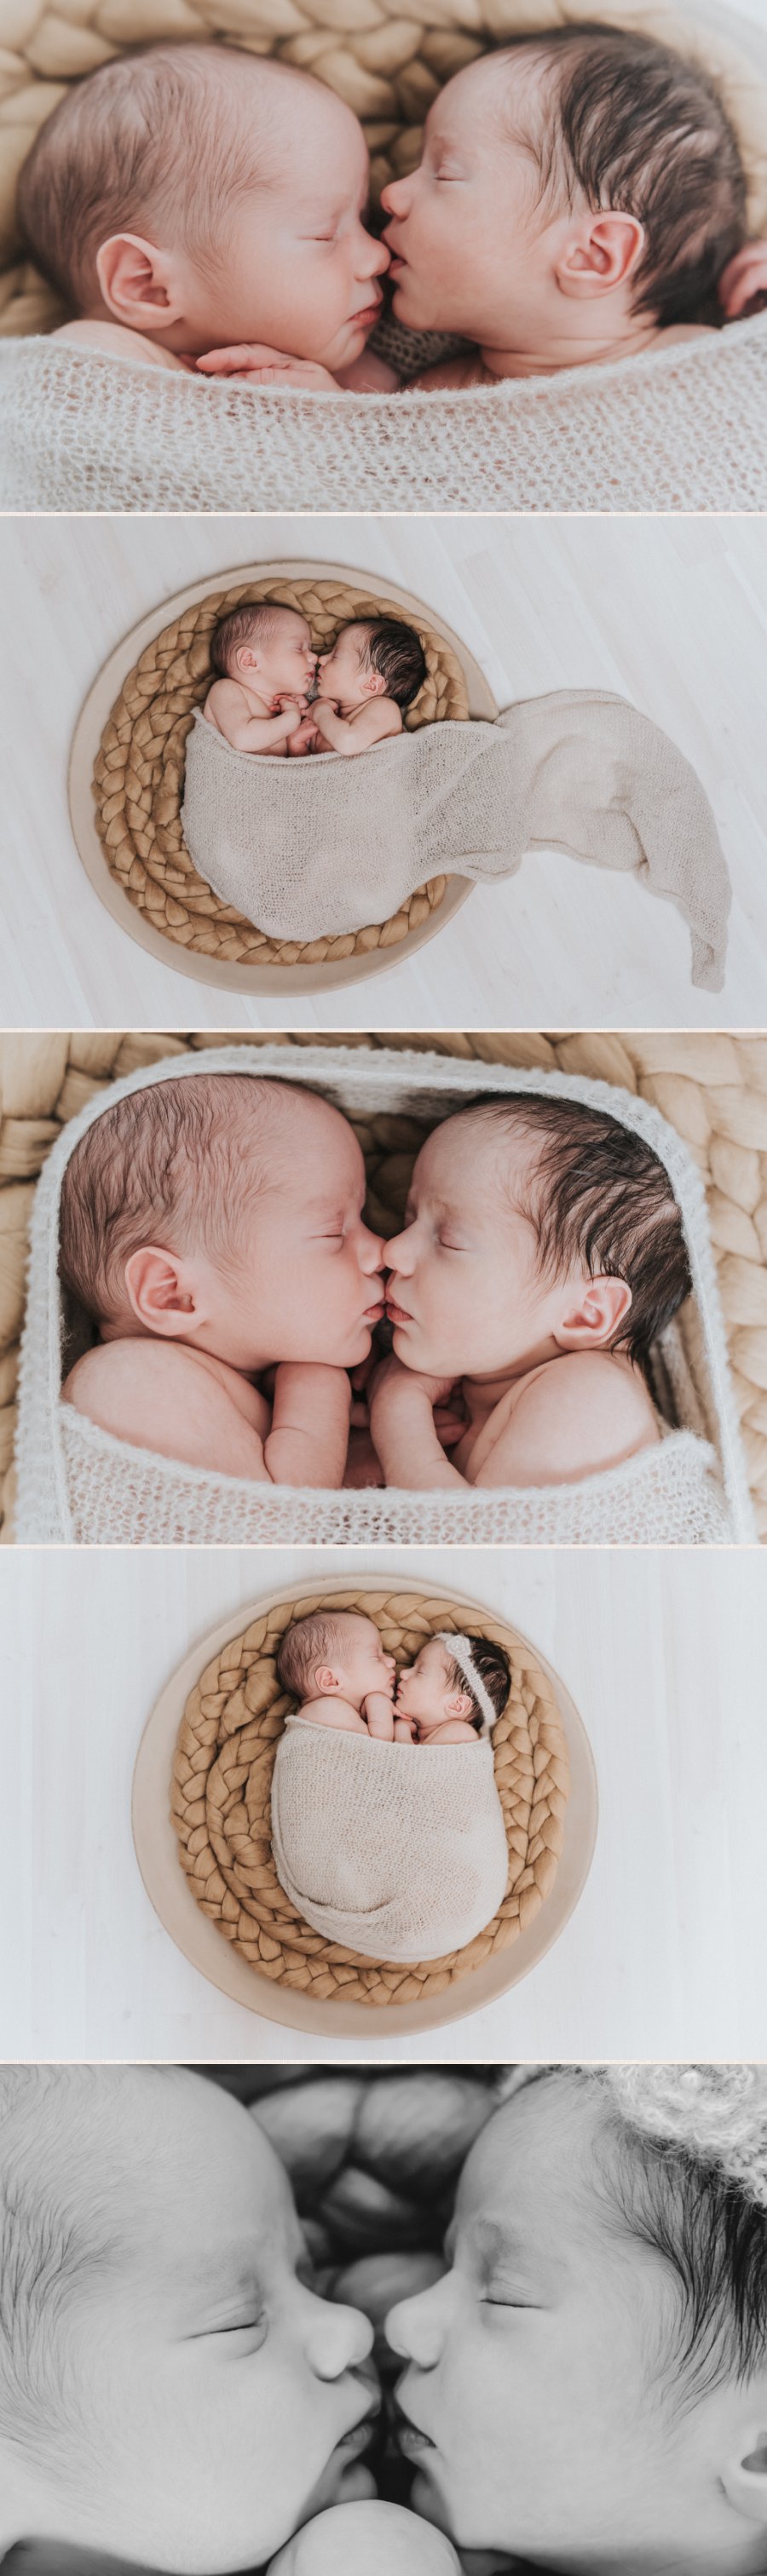 Neugeborenenfotos von Tim und Sara aus Berlin.